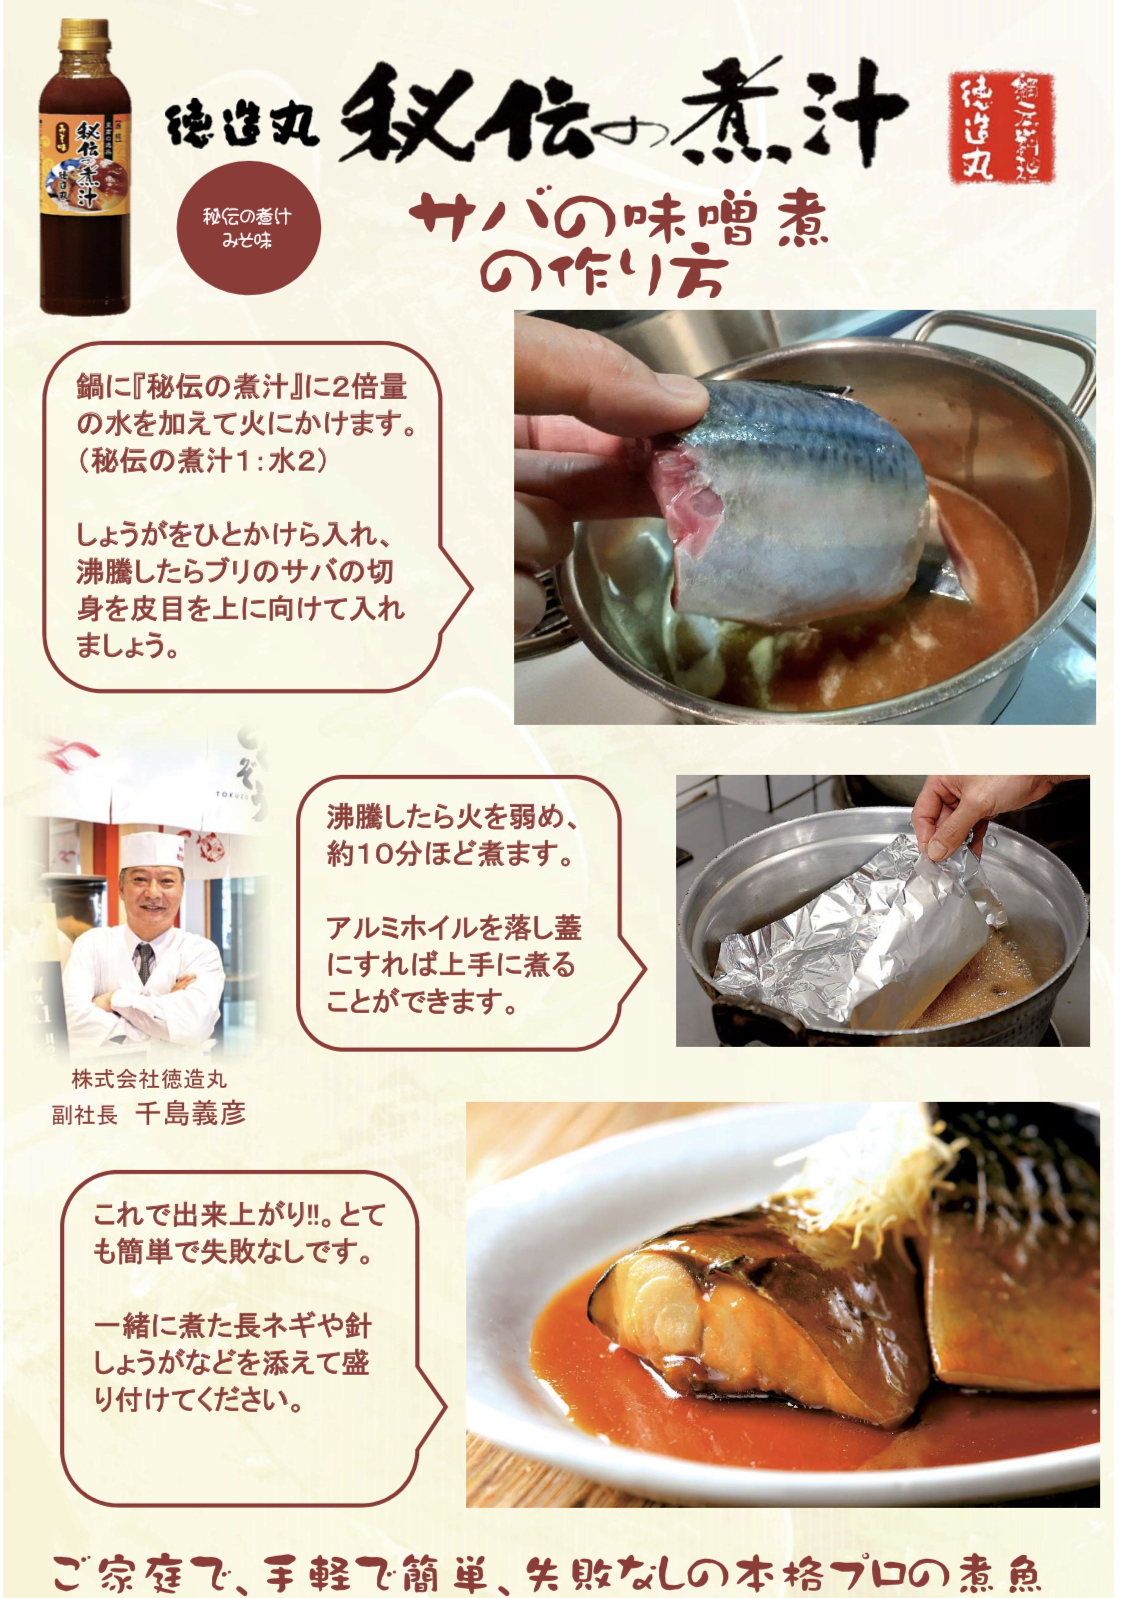 さばの味噌煮レシピ 徳造丸「秘伝の煮汁みそ味」お家で簡単プロの味